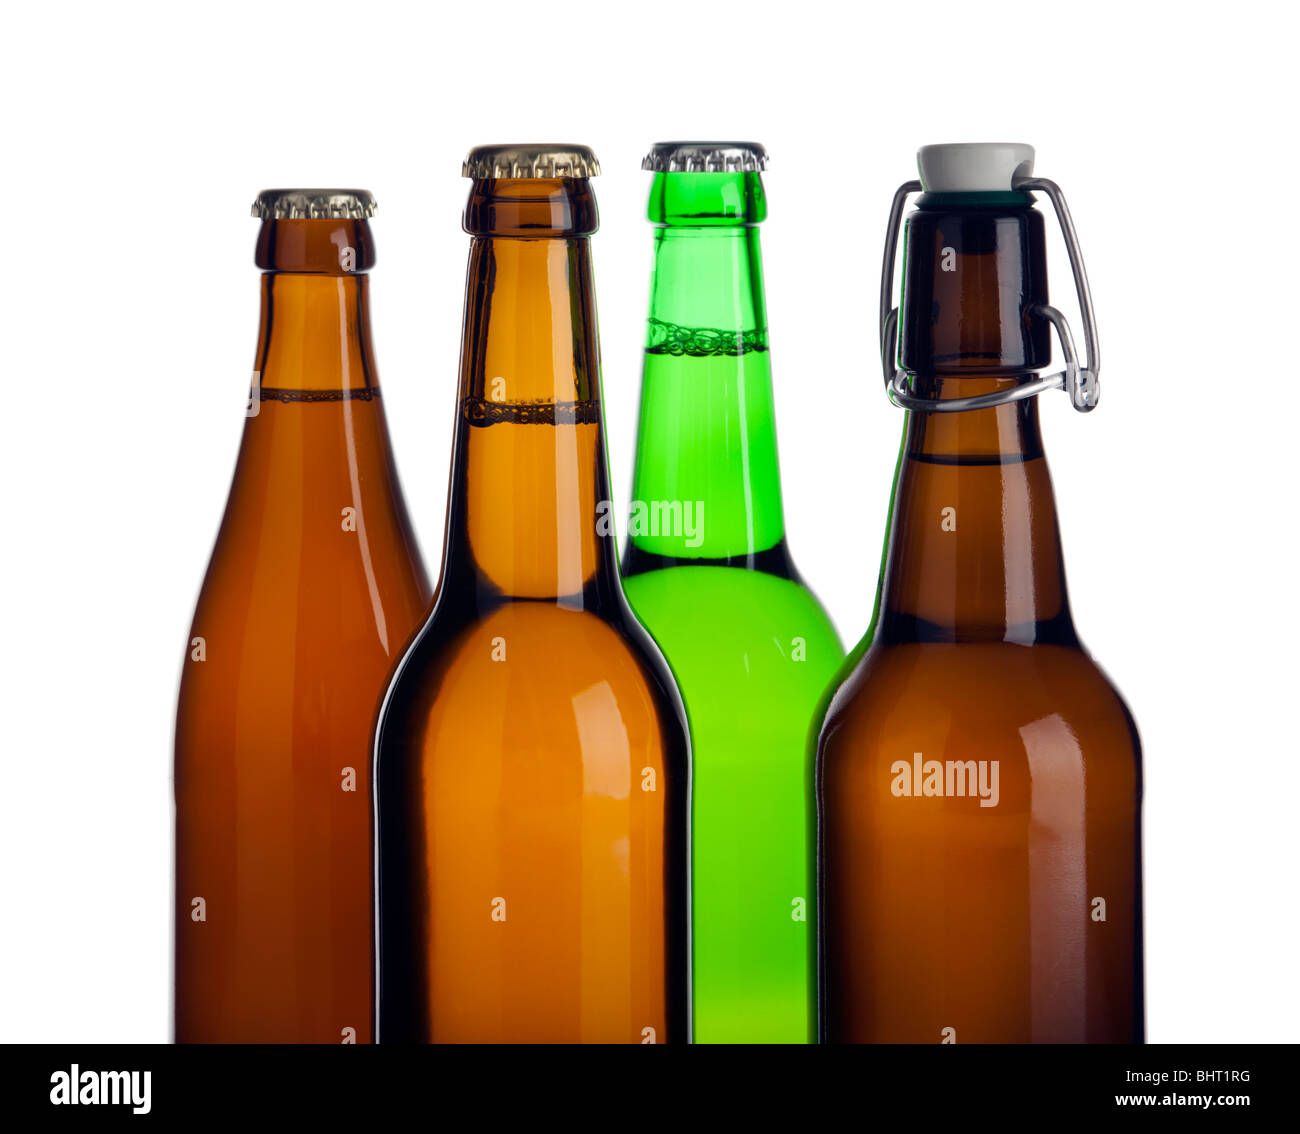 Tops de cuatro tipos diferentes de botellas de cerveza sin etiquetas, cuarteado Foto de stock